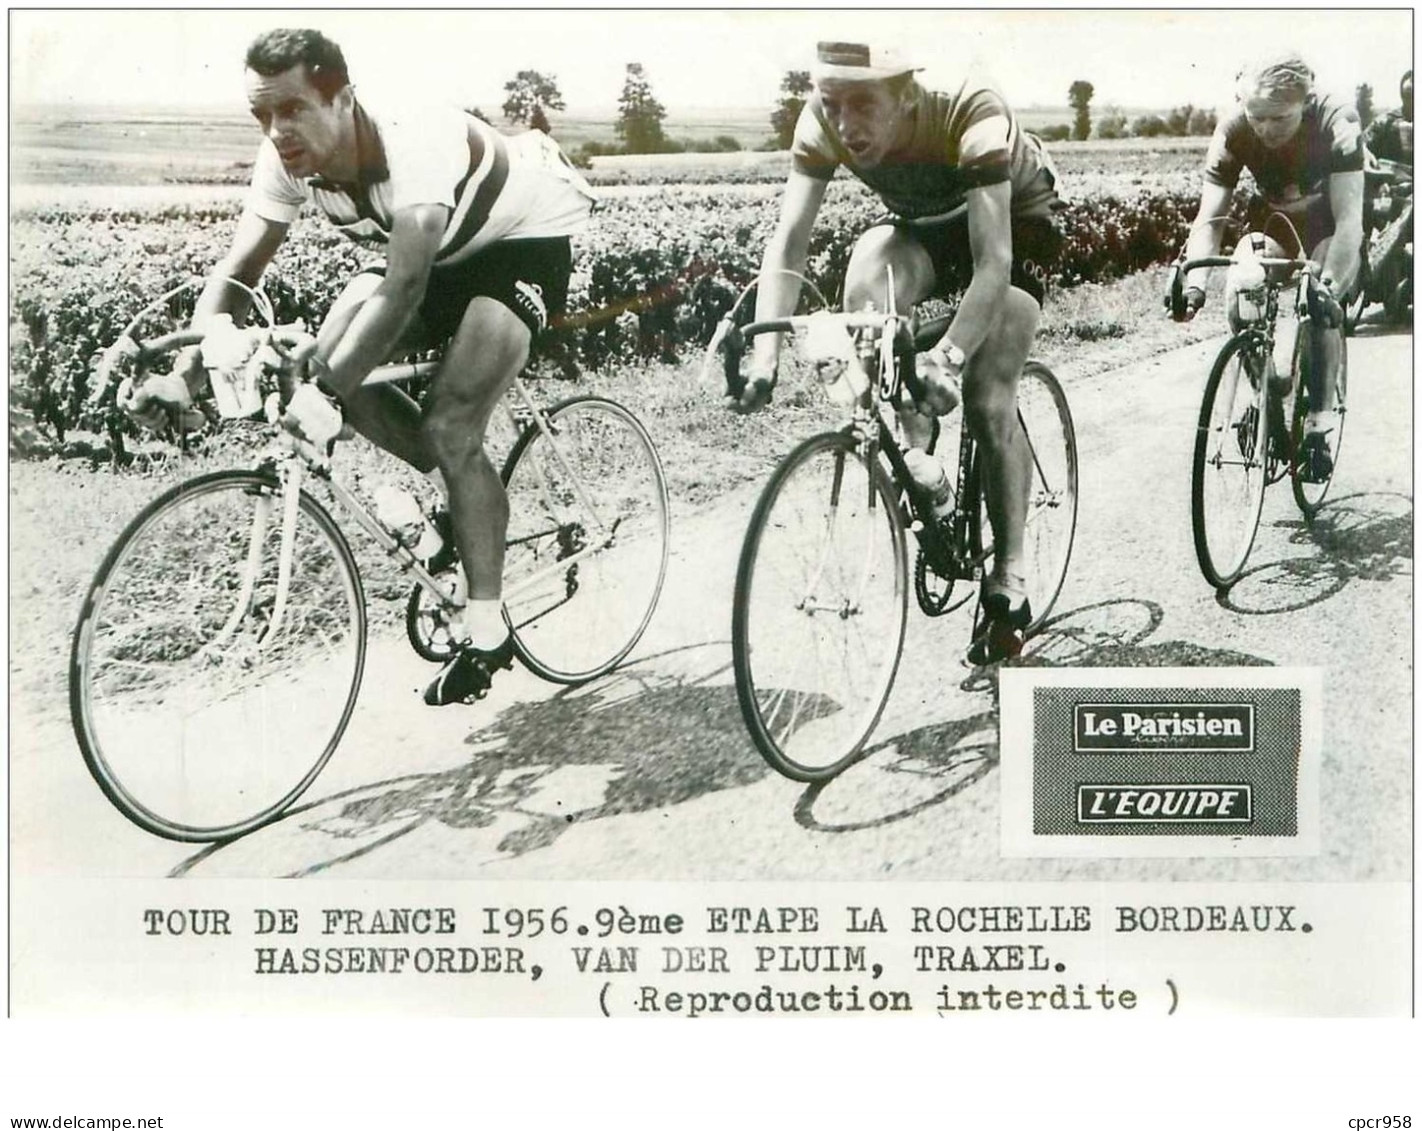 PHOTO DE PRESSE ORIGINALE TOUR DE FRANCE 1956.20X15.9eme ETAPE LA ROCHELLE BORDEAUX.HASSENFORDER,VAN DER PLUIM,.n°18670 - Cycling